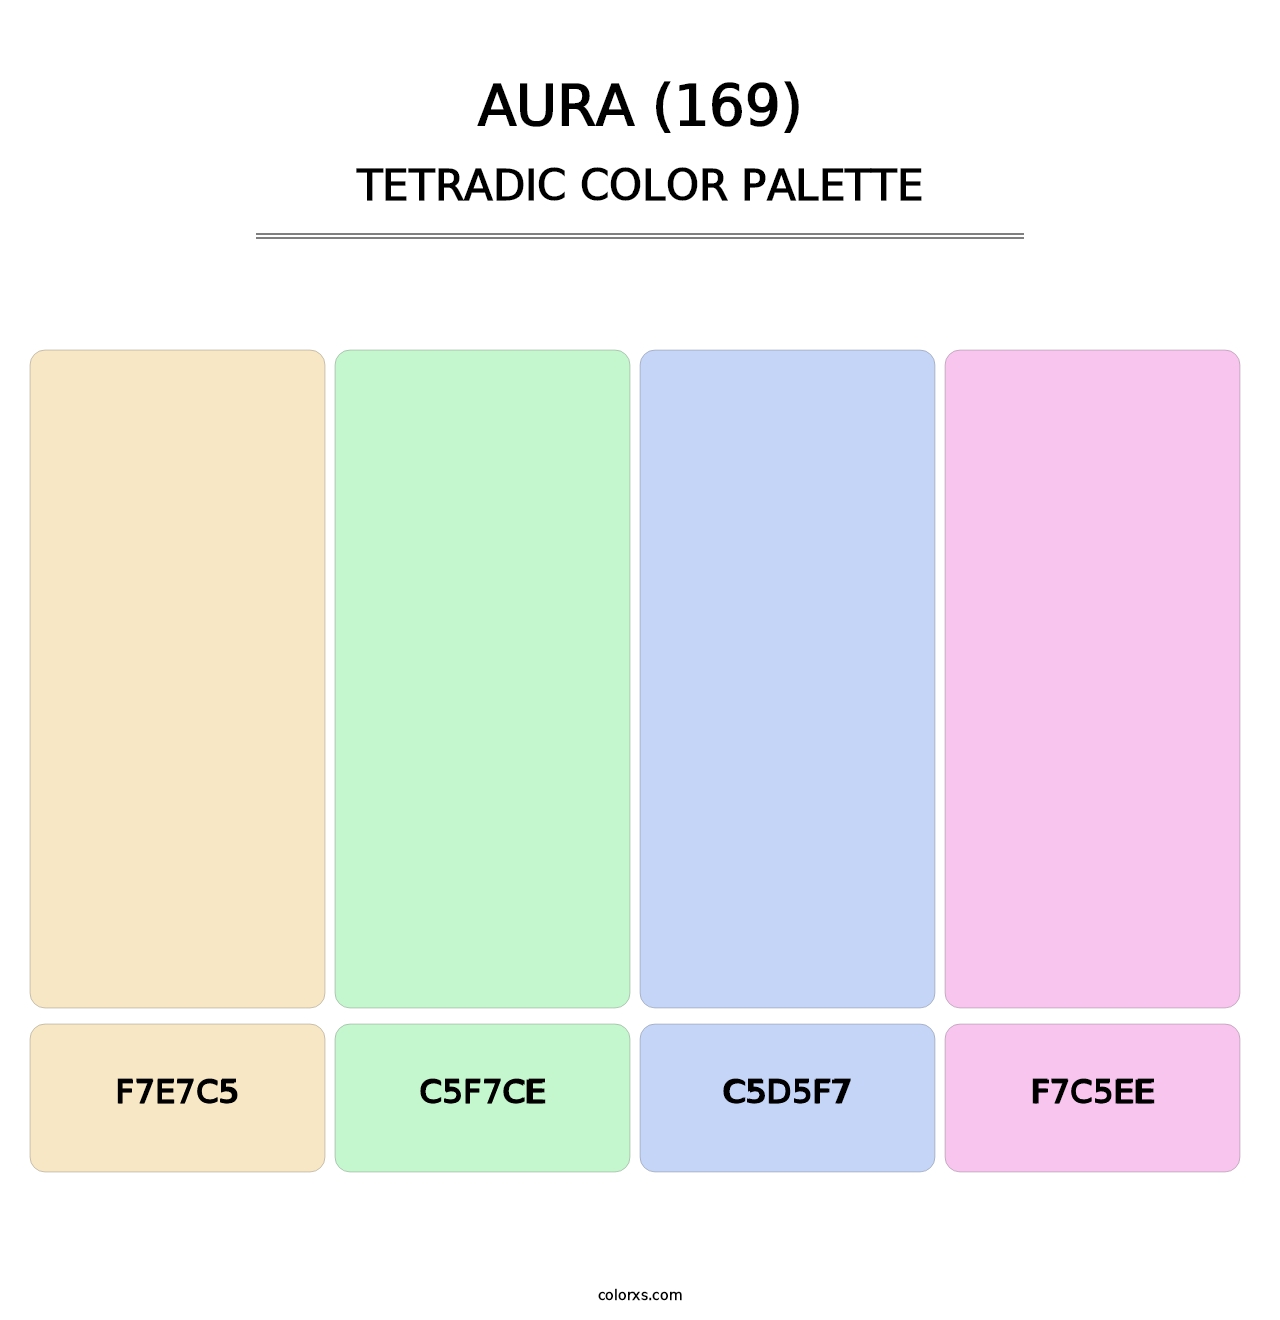 Aura (169) - Tetradic Color Palette